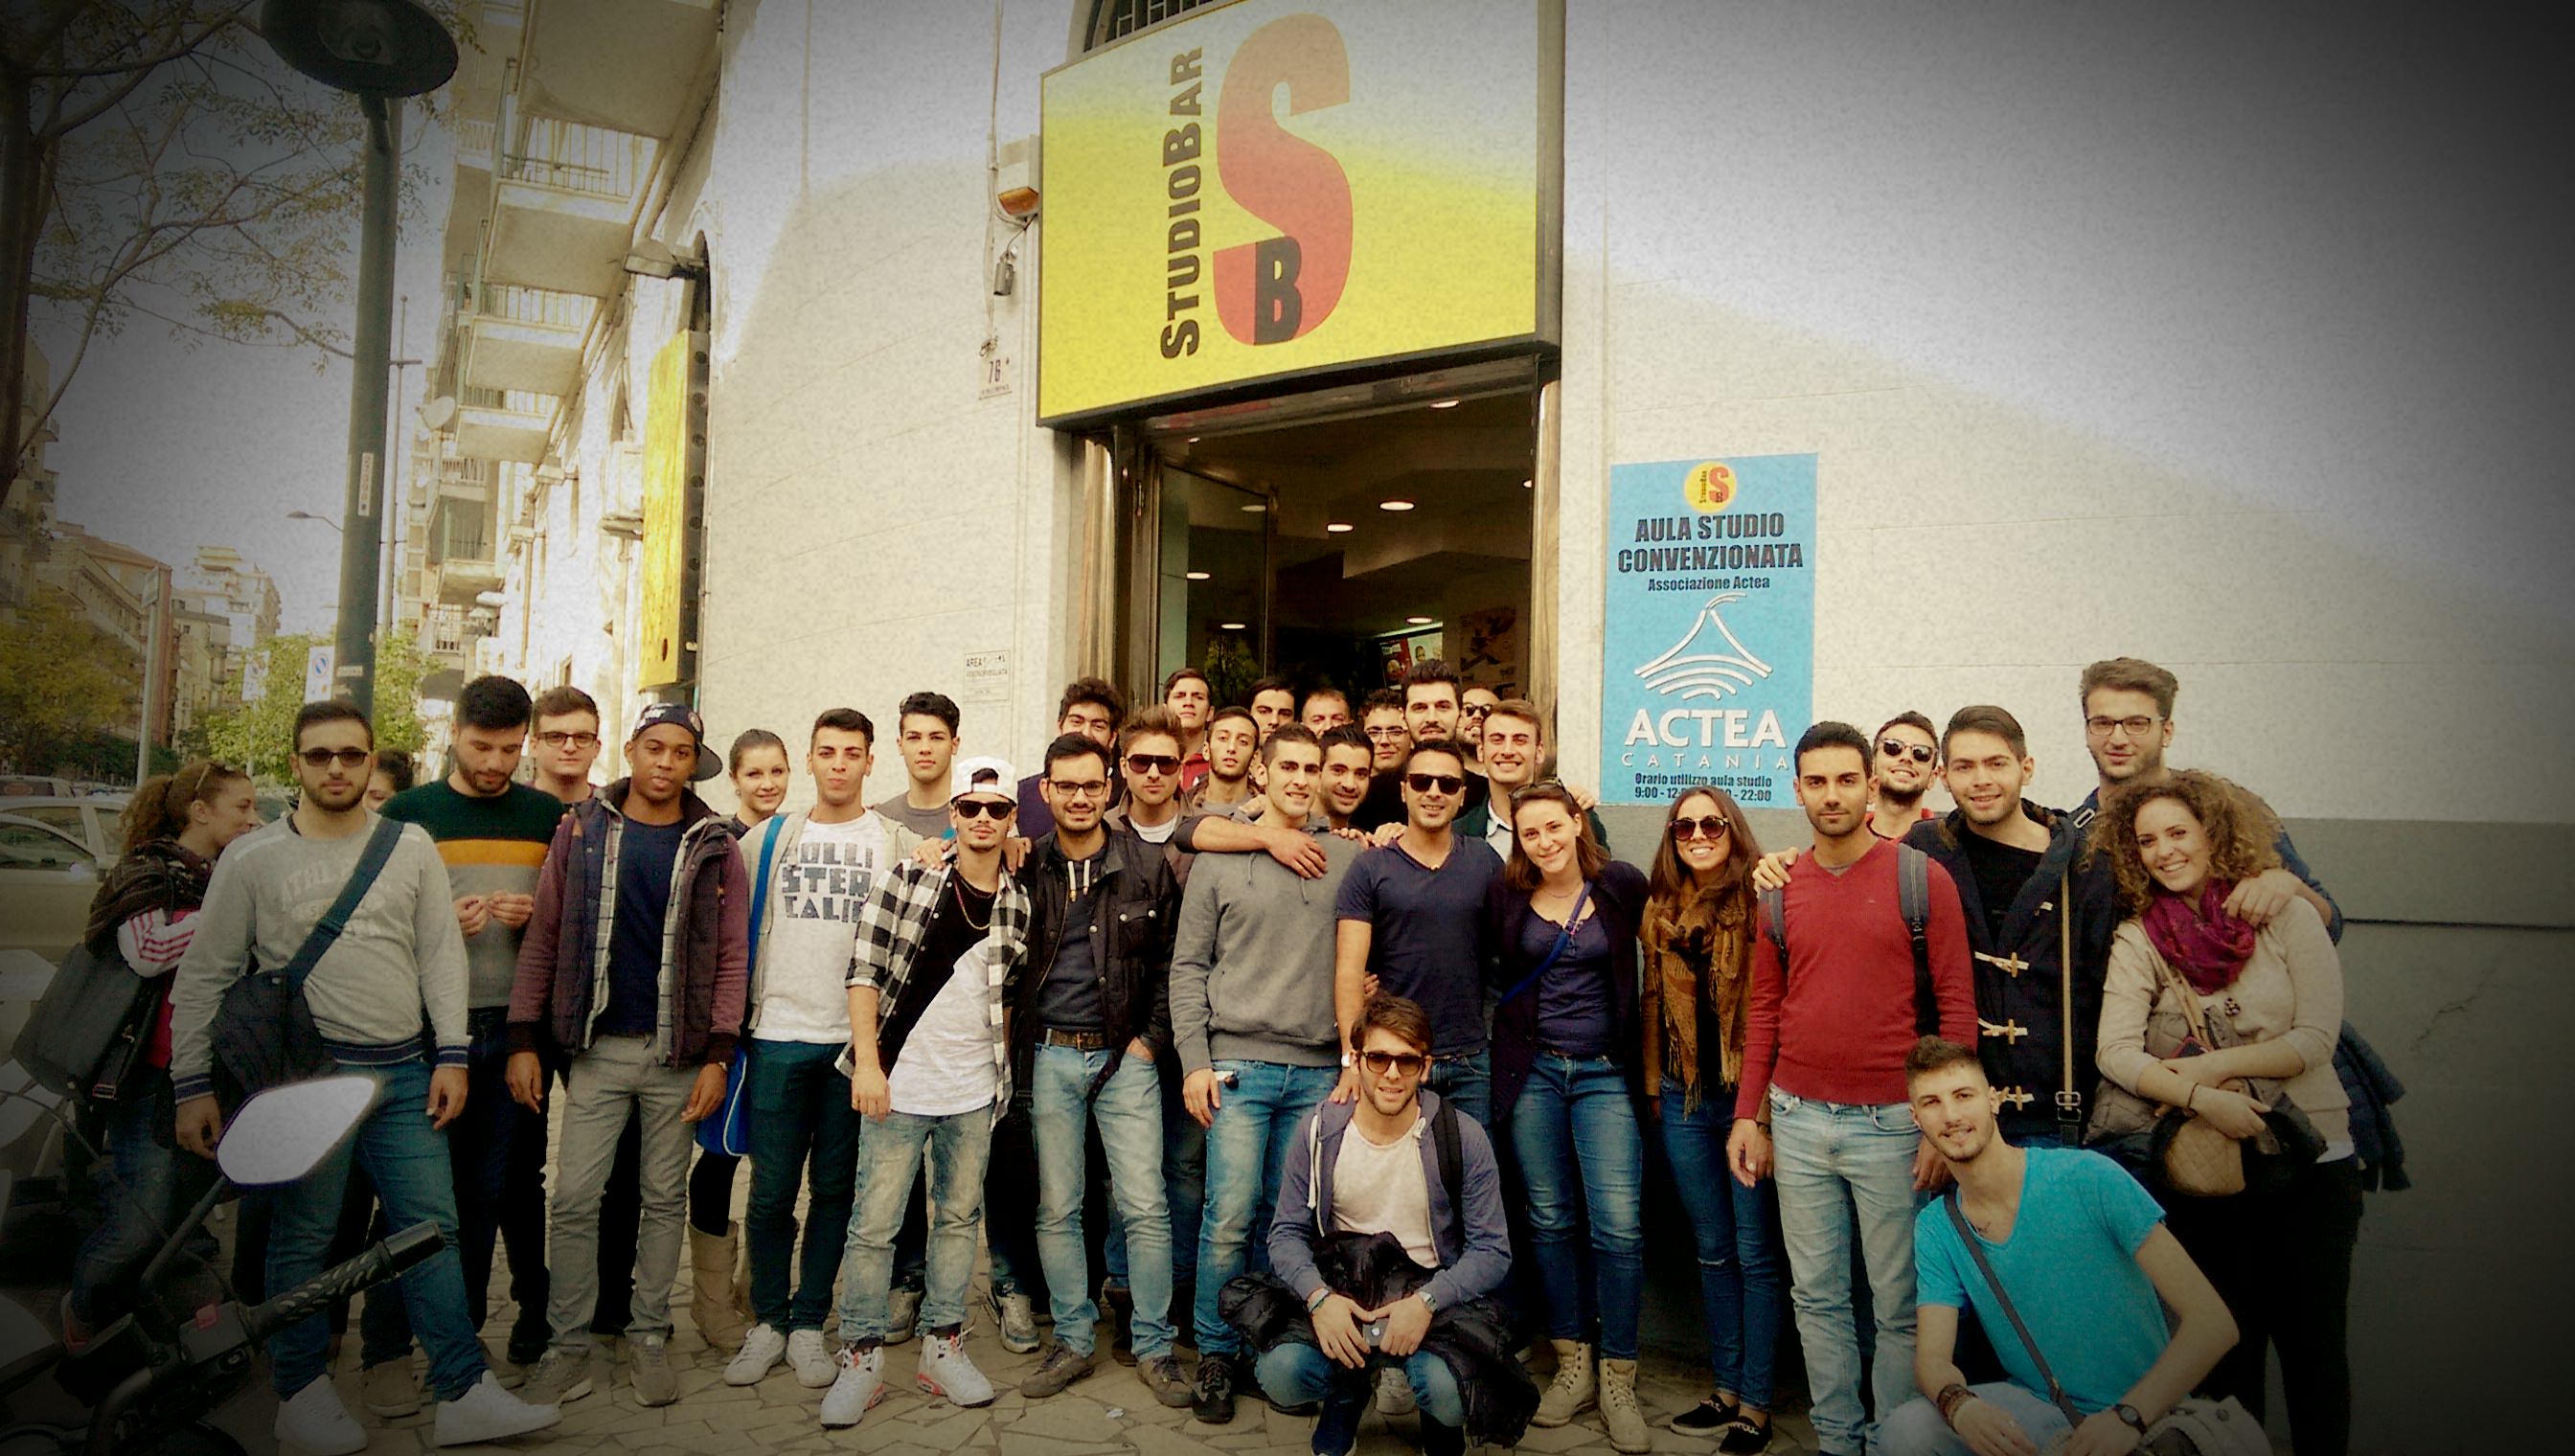 Catania, nuova aula: con Actea si studia nel confort!